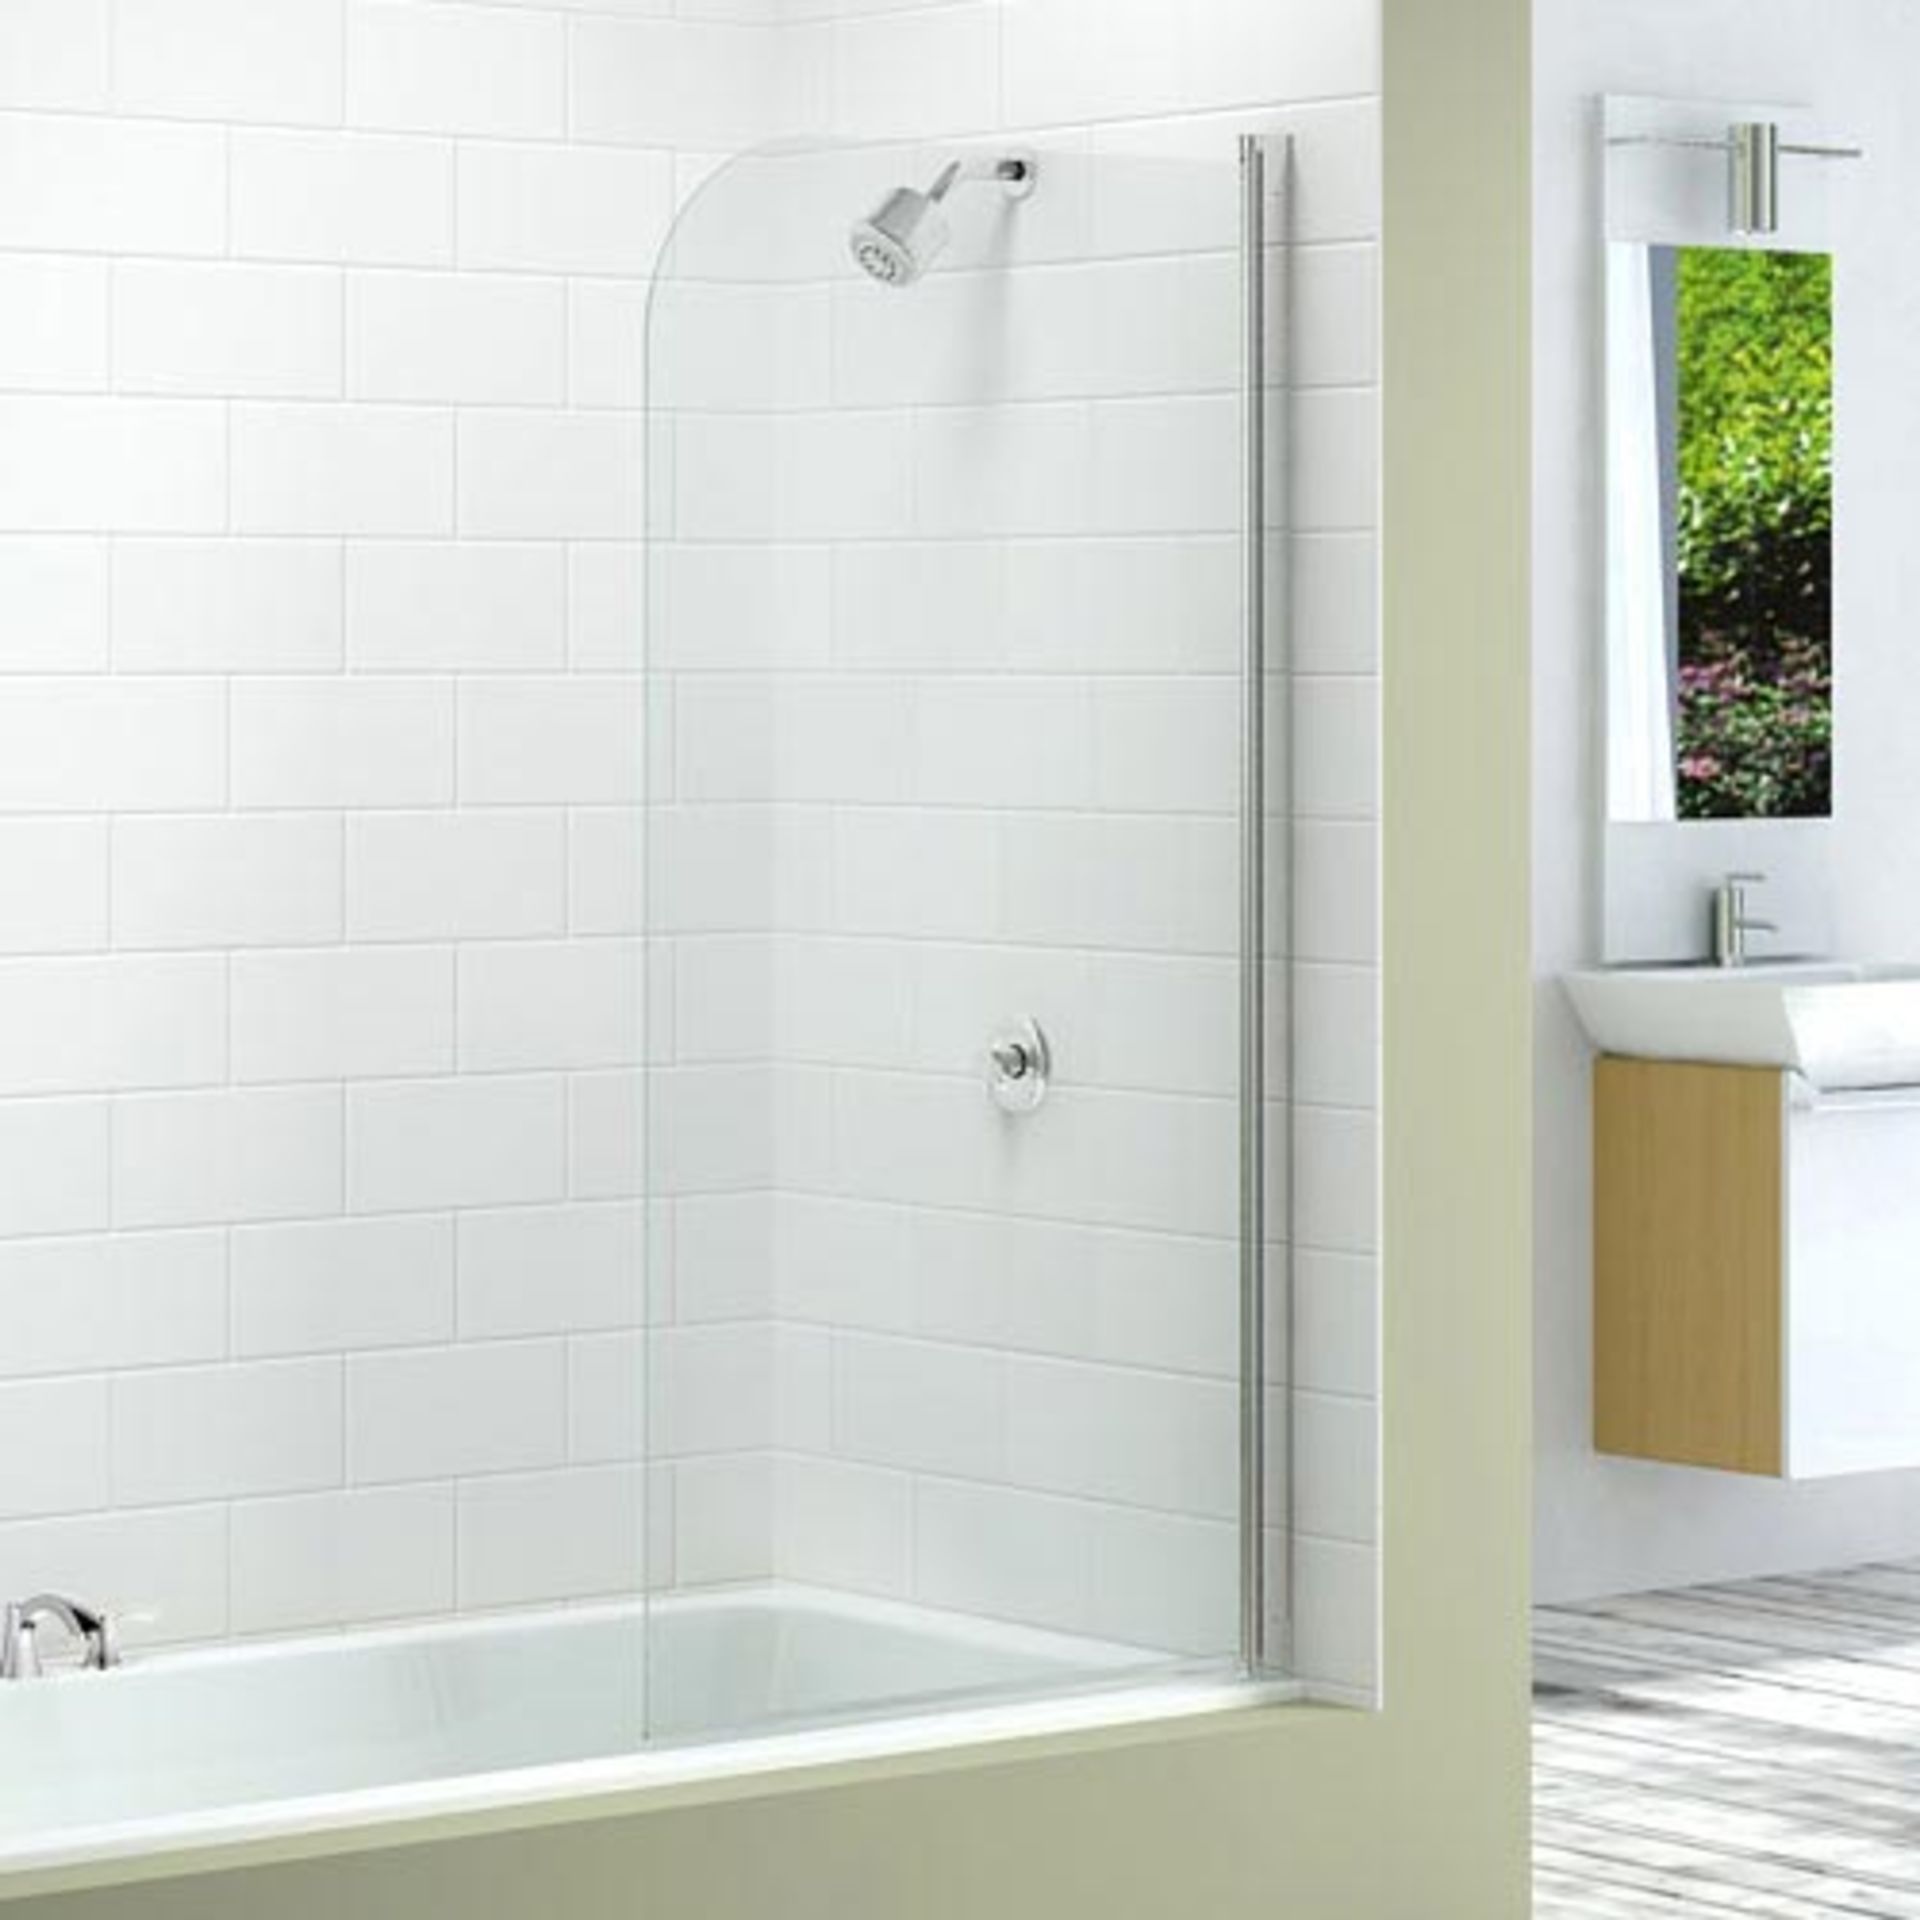 New (Y160) 1500x800mm Single Curved Bathroom Screen